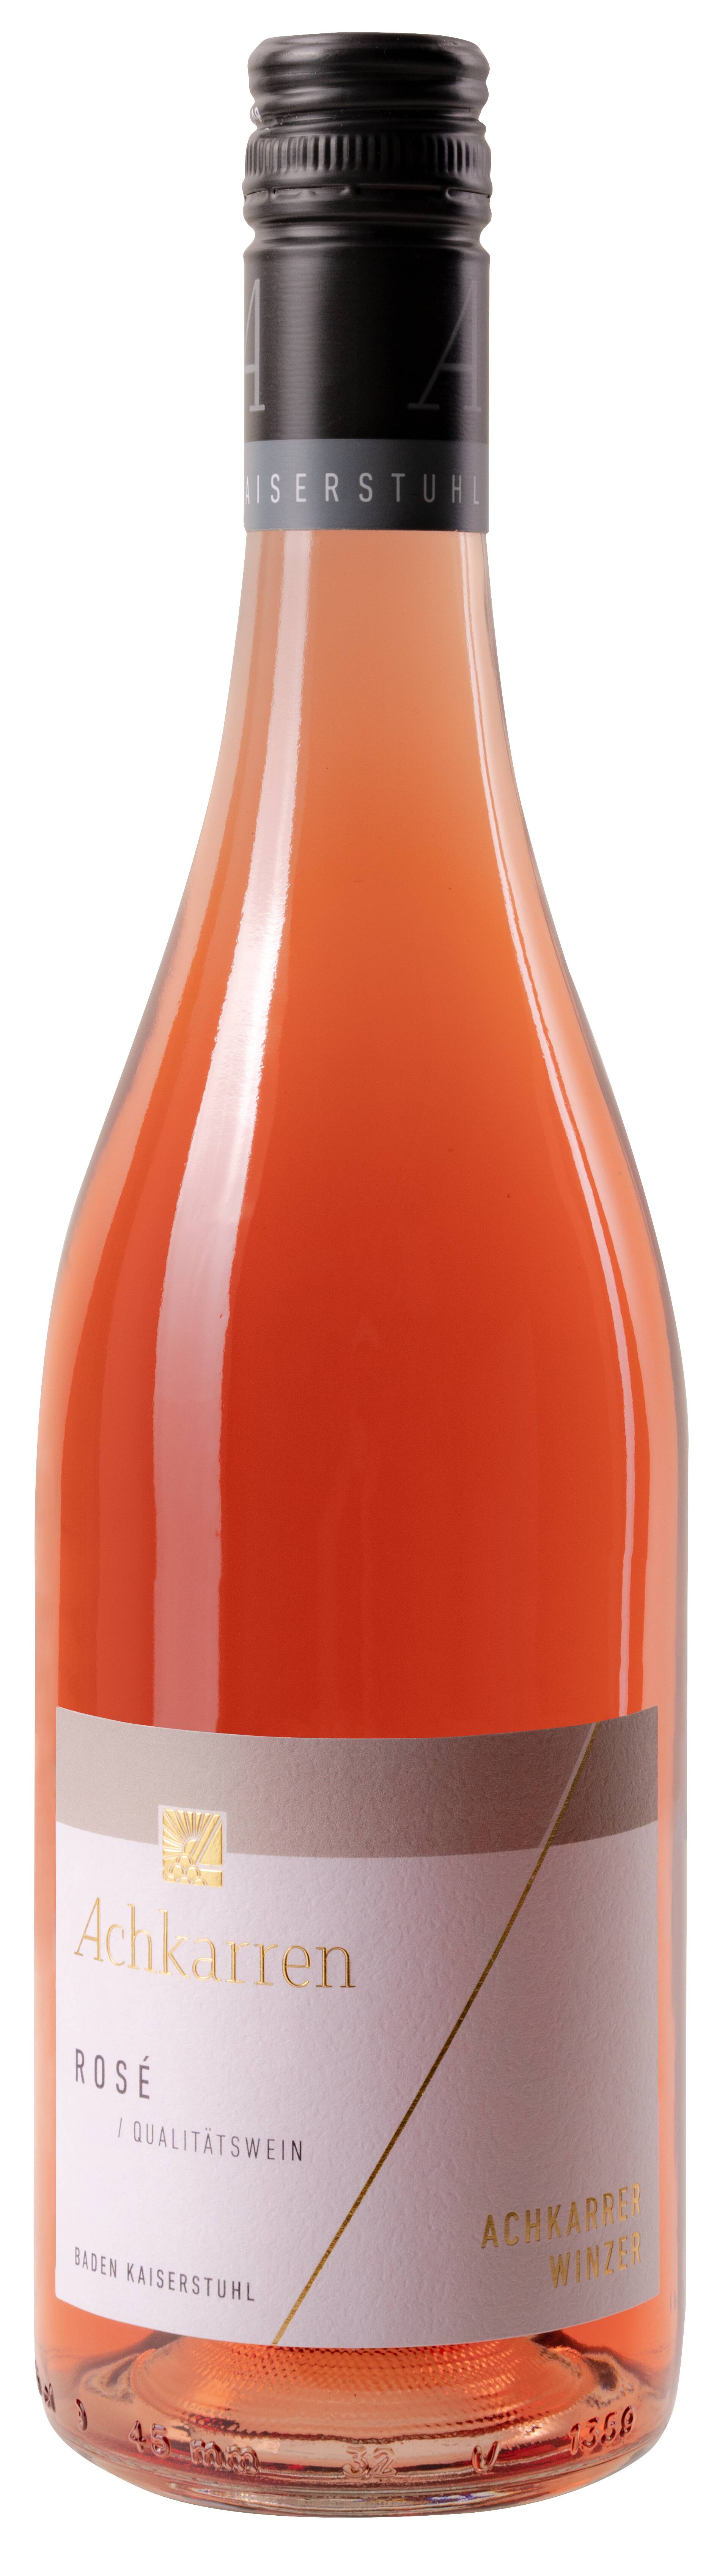 Achkarrer Winzer Rosé Qualitätswein trocken